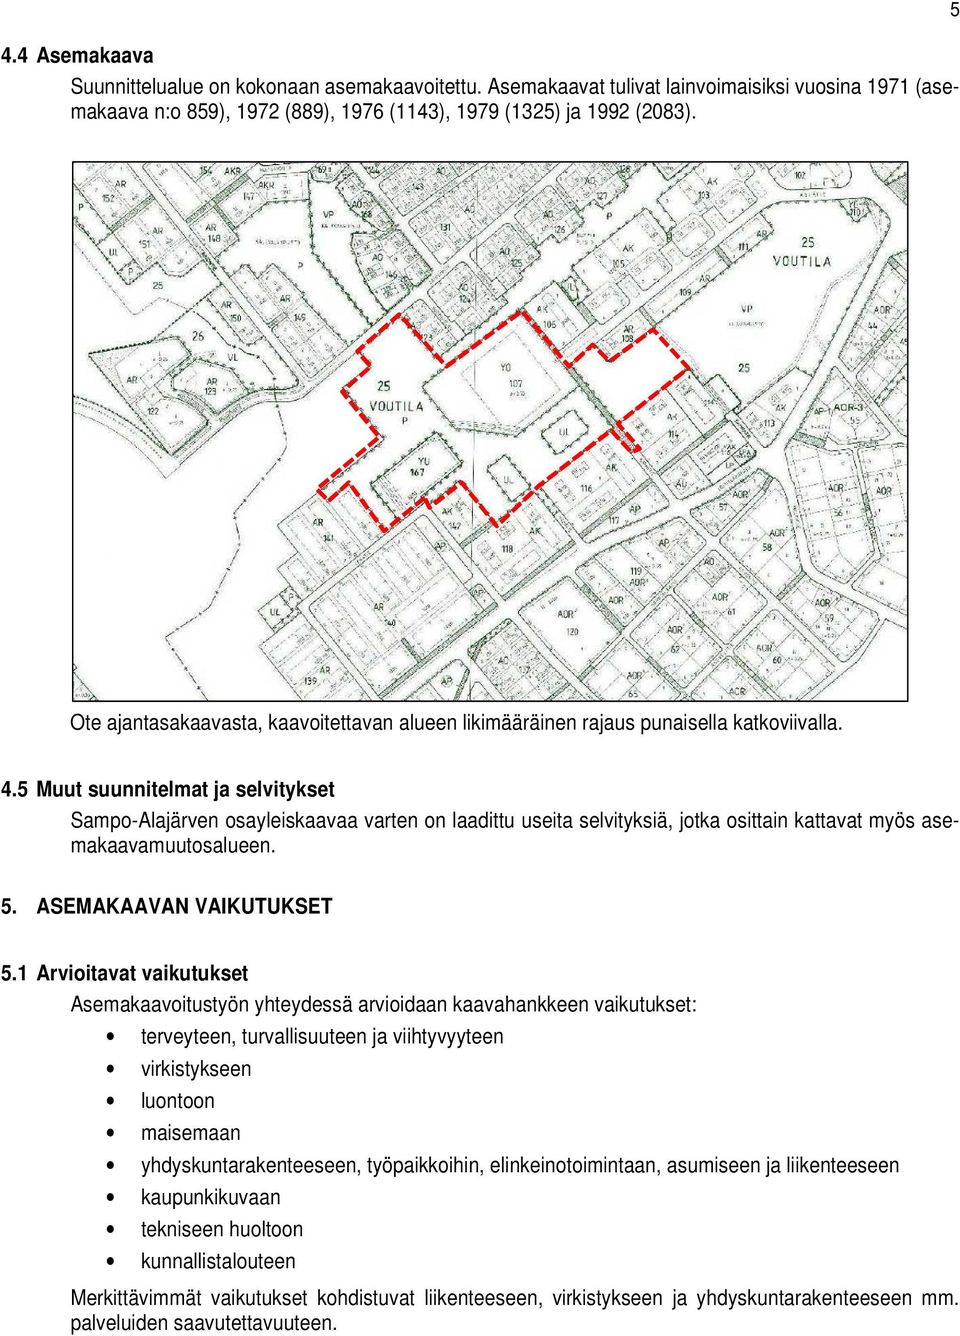 5 Muut suunnitelmat ja selvitykset Sampo-Alajärven osayleiskaavaa varten on laadittu useita selvityksiä, jotka osittain kattavat myös asemakaavamuutosalueen. 5. ASEMAKAAVAN VAIKUTUKSET 5.